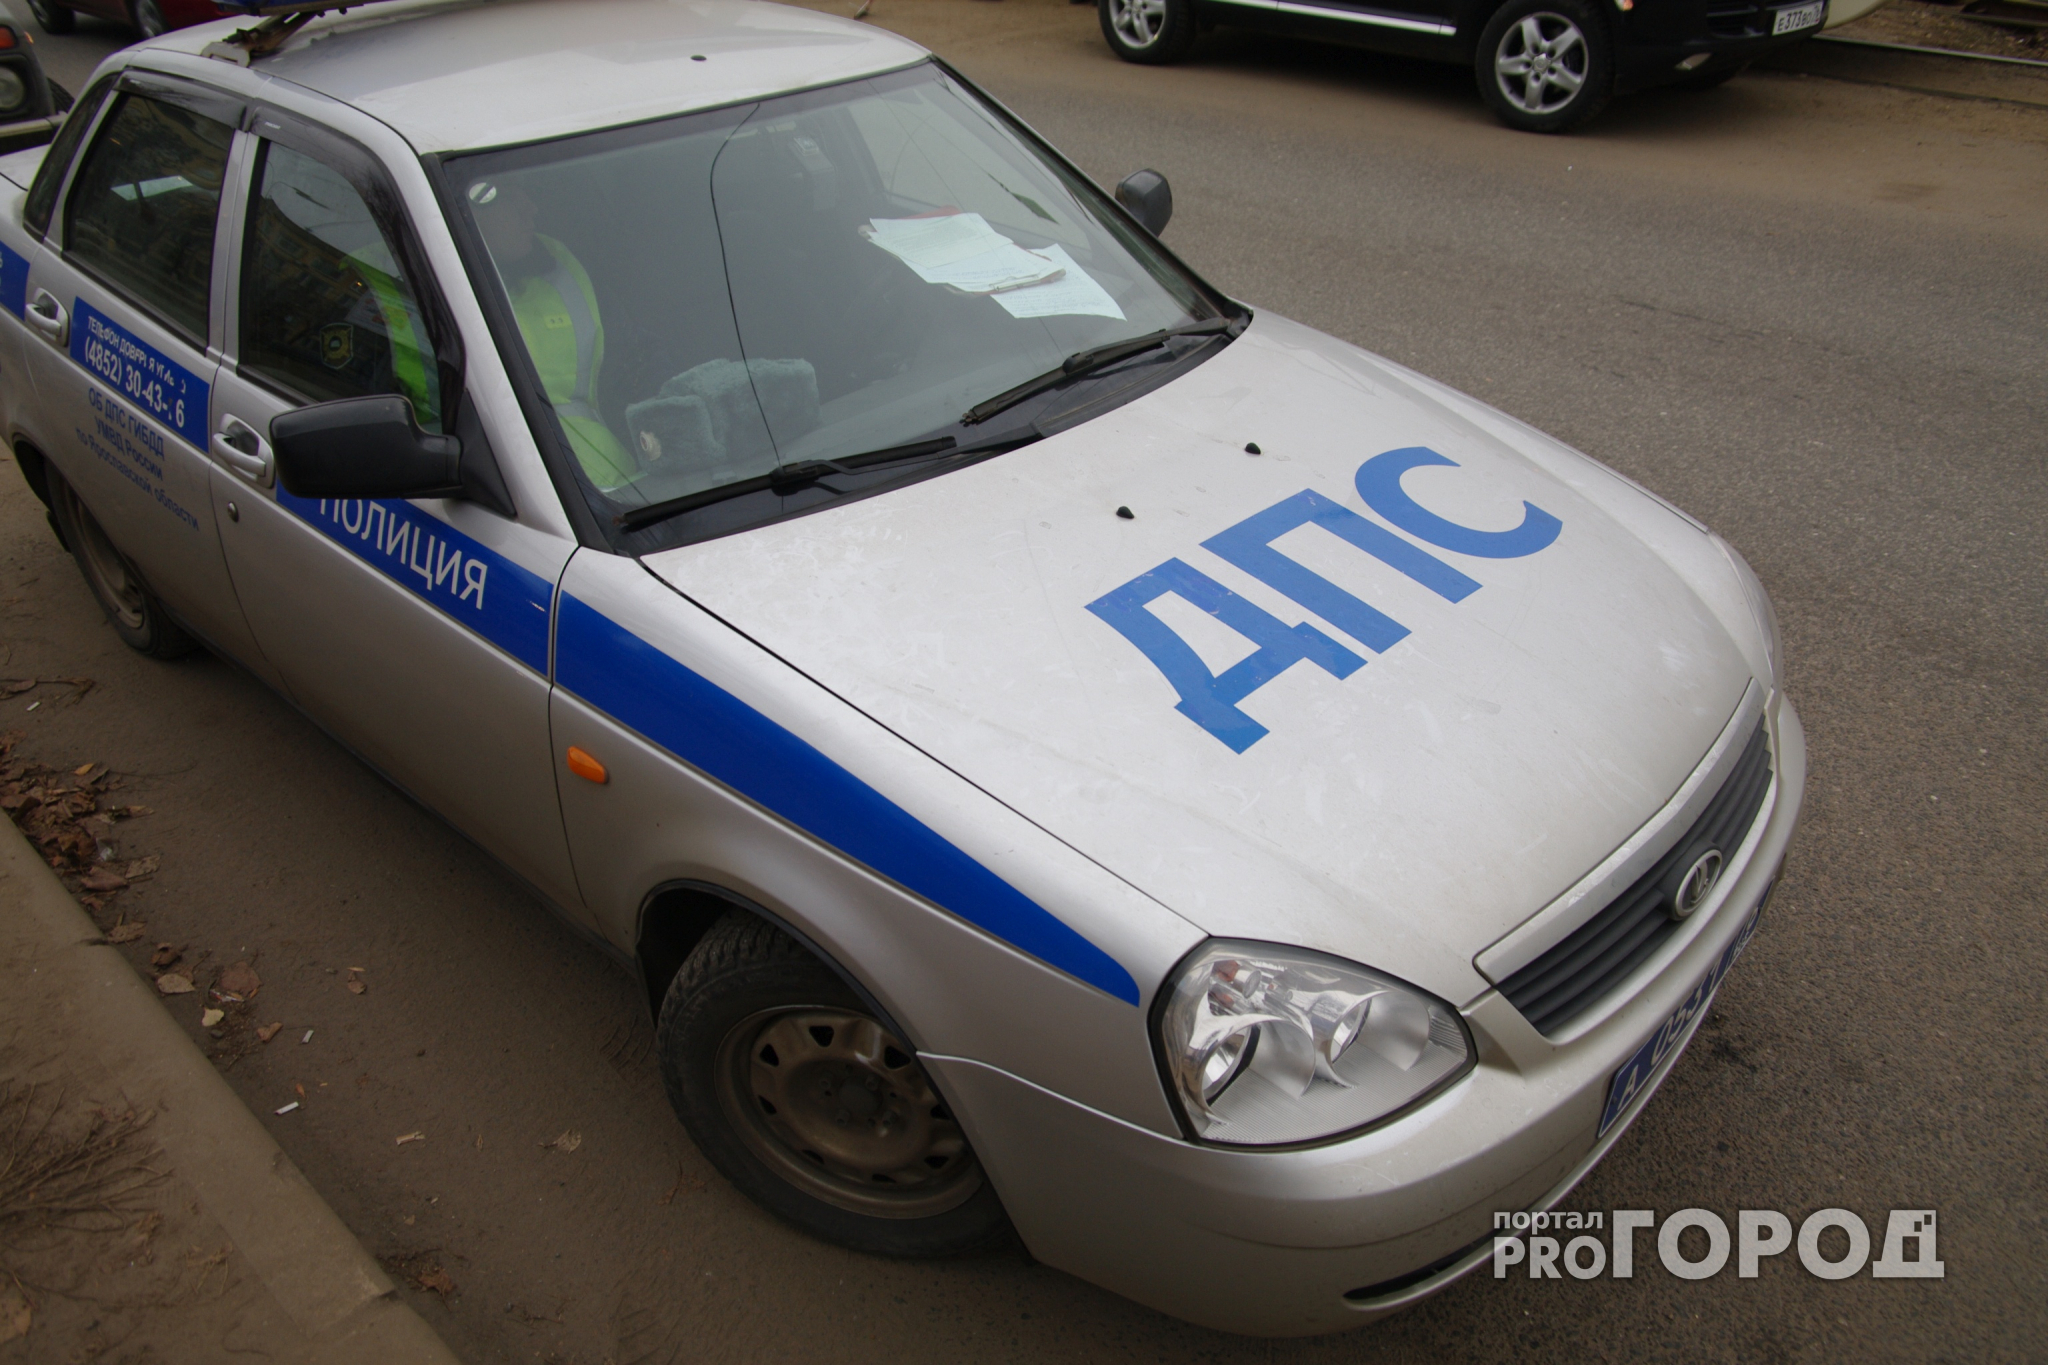 Под Ярославлем водитель предложил полицейским «забыть о содержимом багажника» за 300 рублей